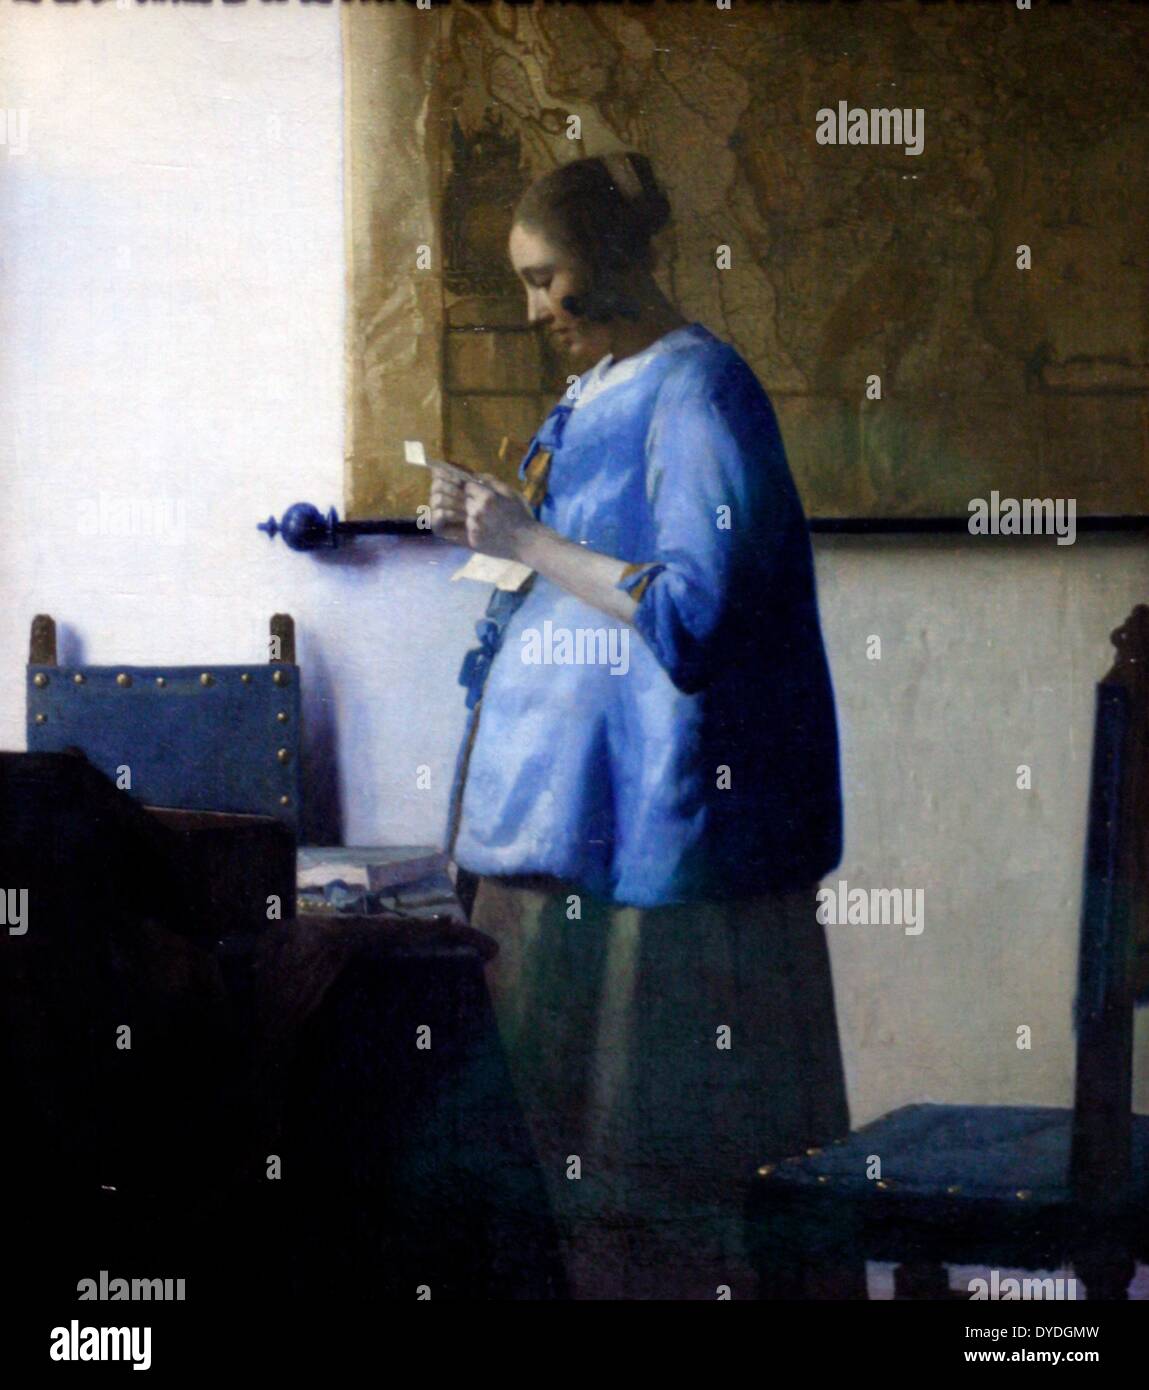 Frau liest einen Brief von Johannes Vermeer (1632-1675). Öl auf Leinwand c. 1663-64. Eine junge Frau wird in der Lesung einen Brief am Morgen Licht absorbiert. Sie trägt eine blaue Nacht Jacke. Besonders innovativ ist seine Darstellung der Haut der Frau mit hellgrauen und die Schatten an der Wand mit Hellblau. Stockfoto